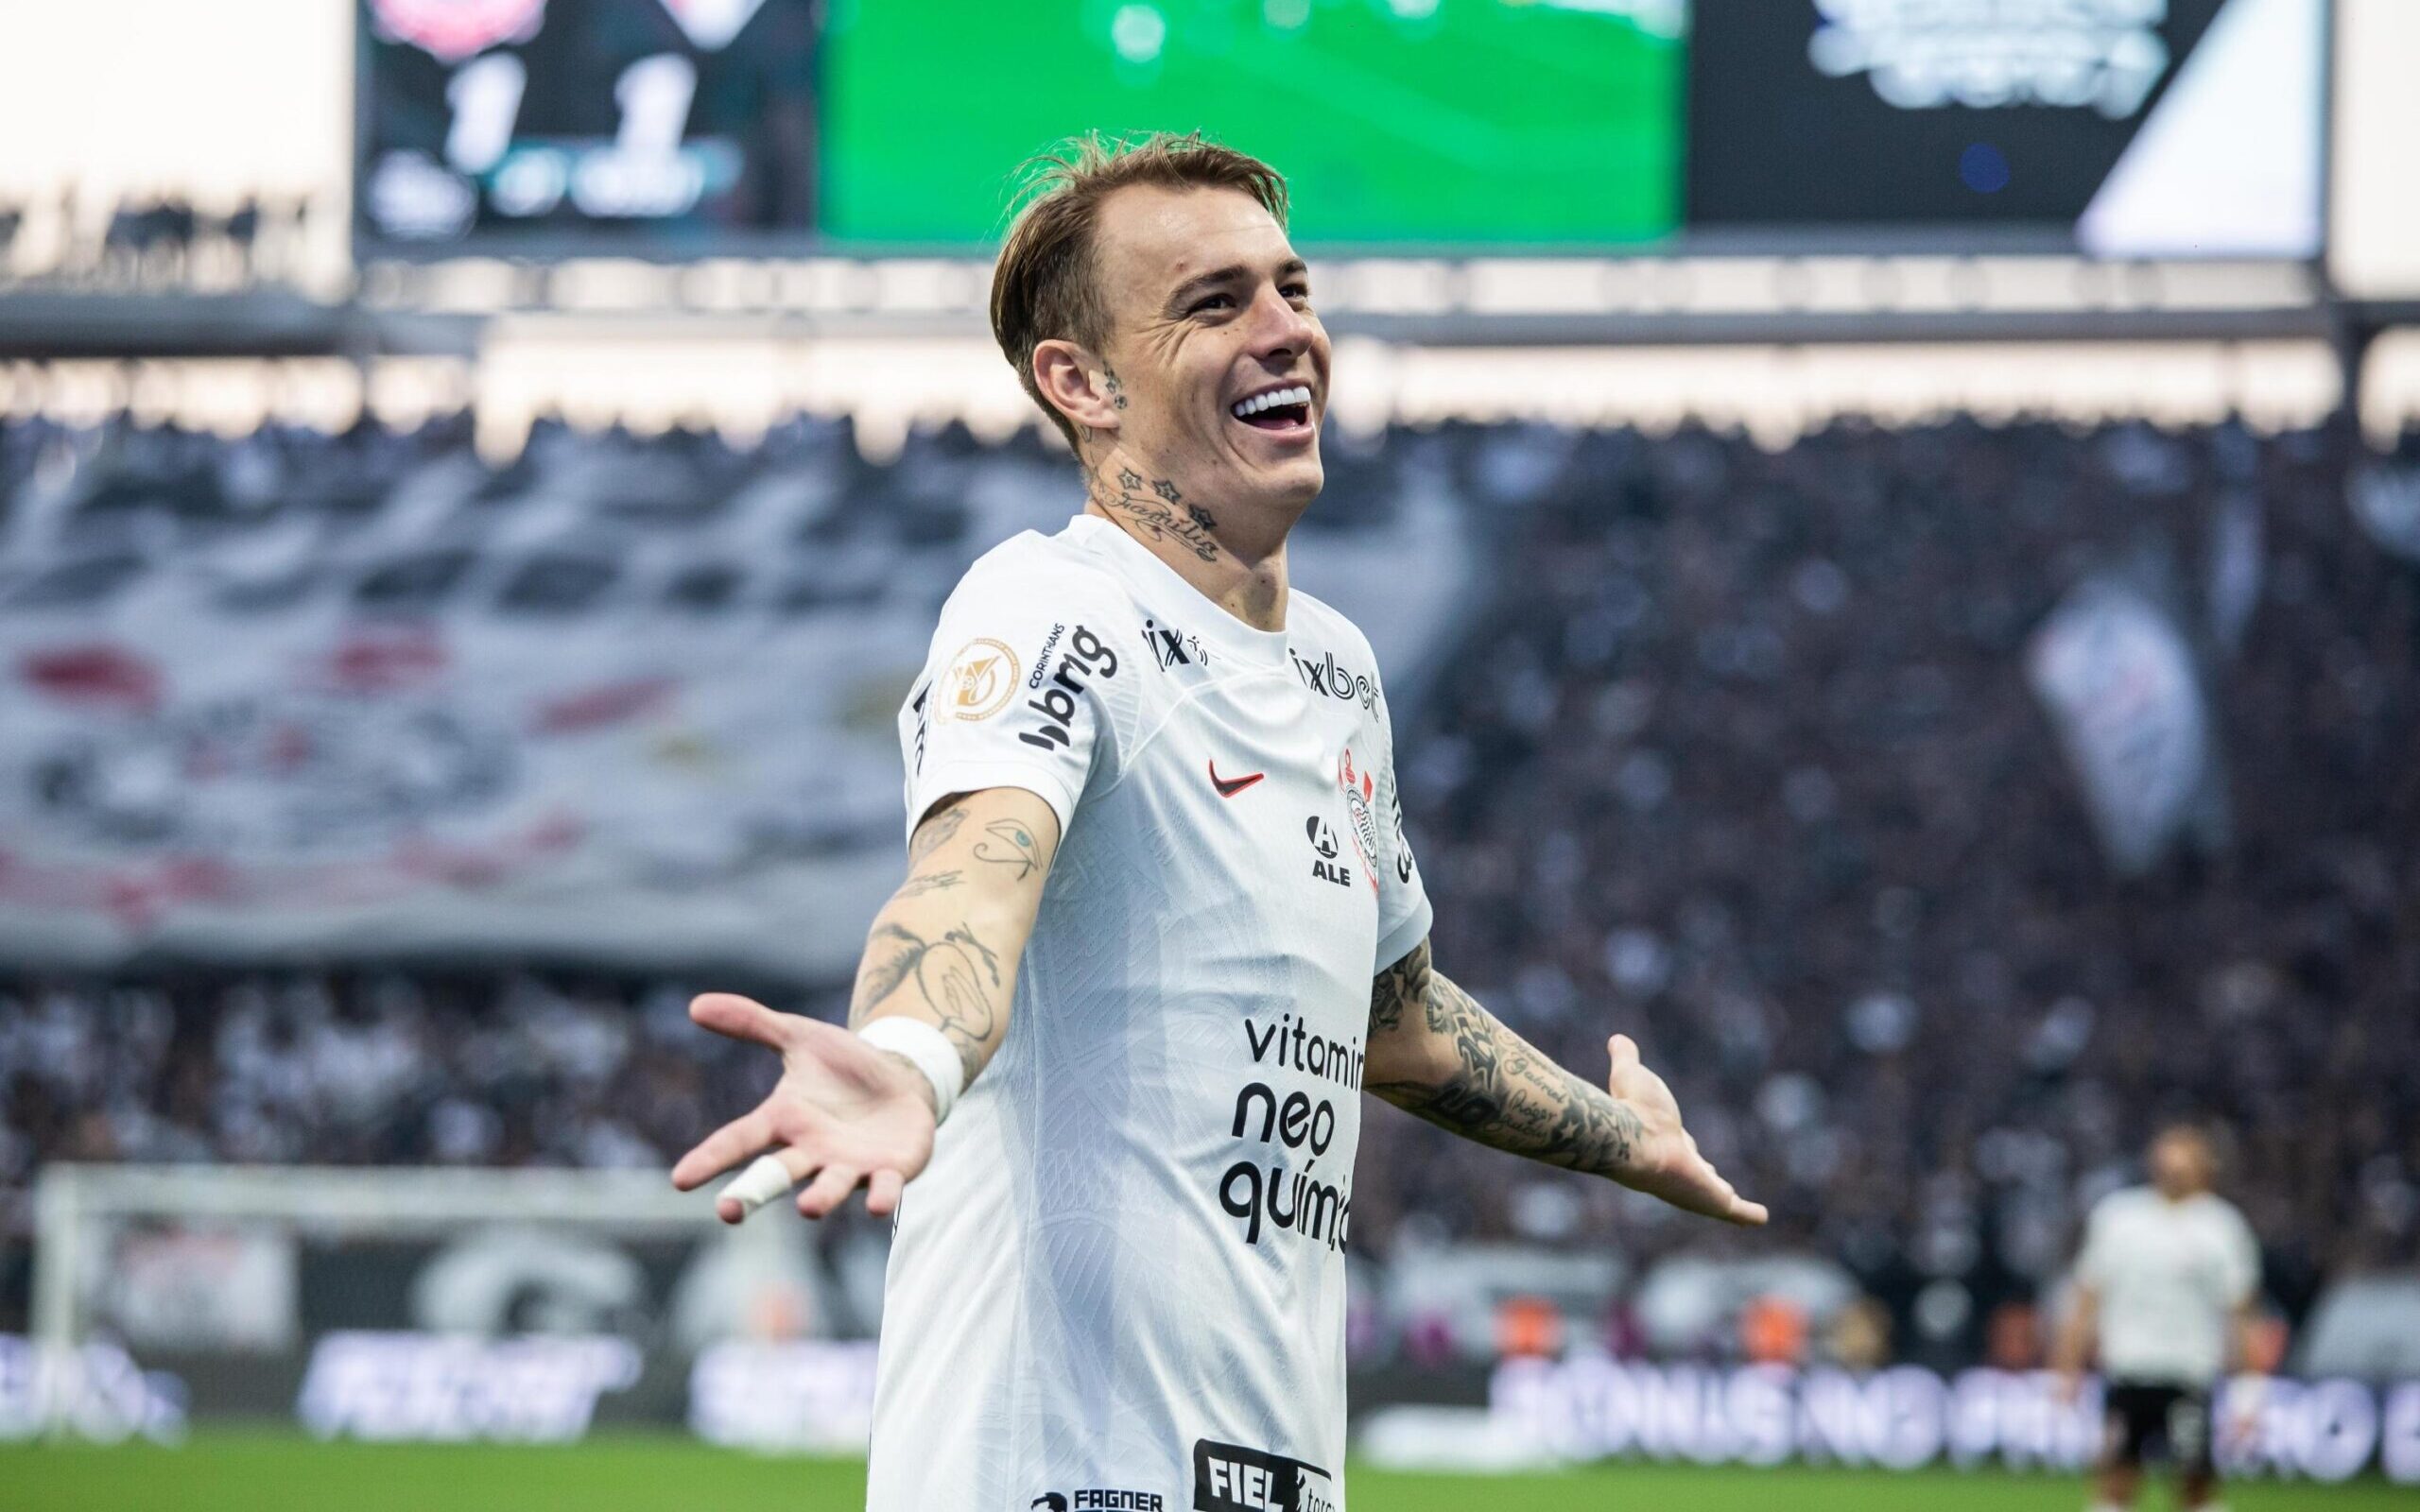 Róger Guedes deixa o Corinthians e vai jogar no Catar; veja valores